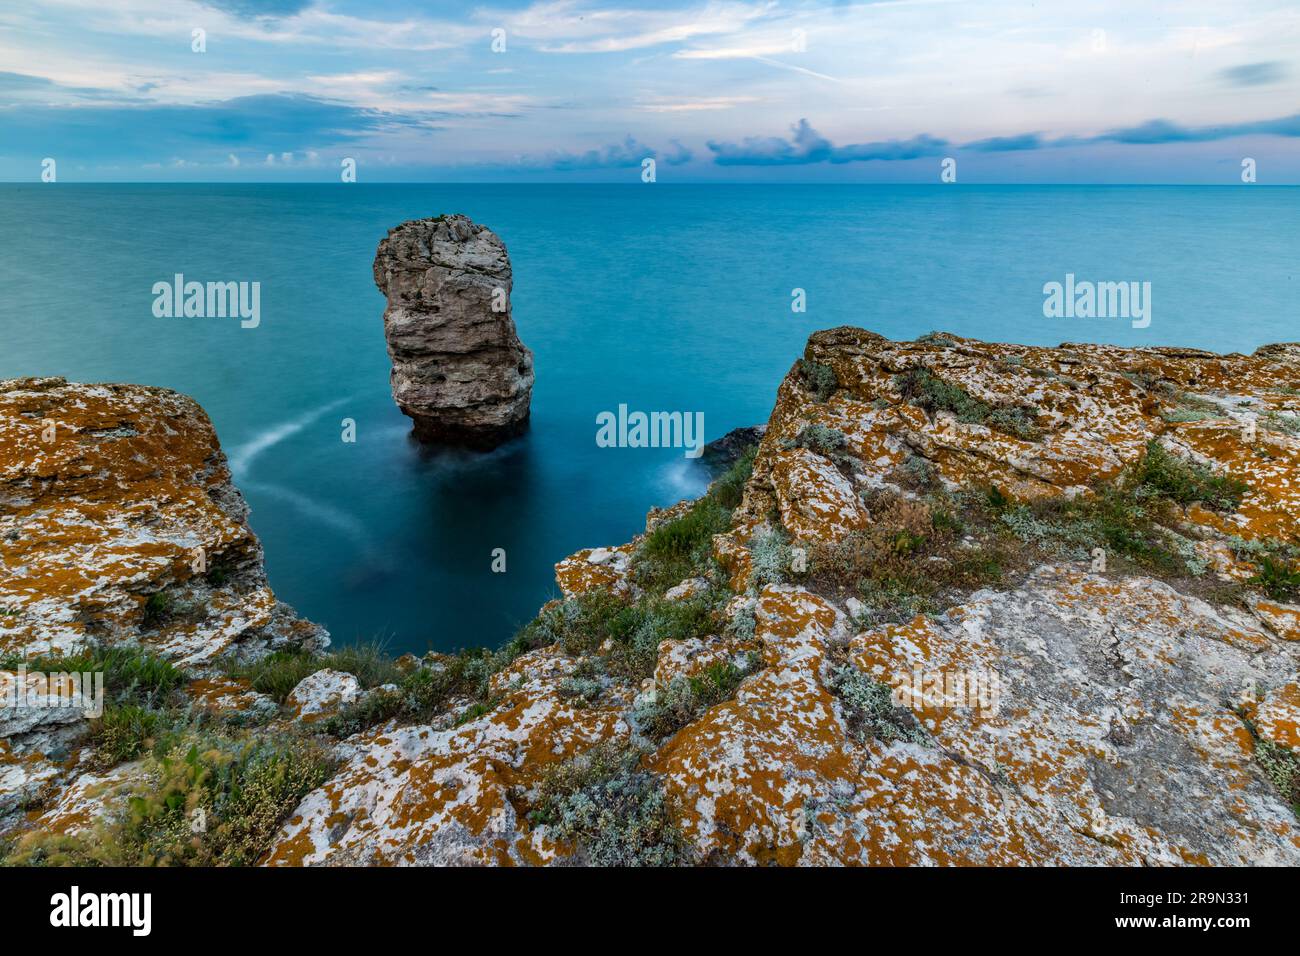 Lange Belichtung, Bewegungsunschärfe durch Wasser. Iglata oder die Felsformation Needle in der Nähe des Schwarzen Meeres im Norden Bulgariens, dem Dorf Tyulenovo. Stockfoto